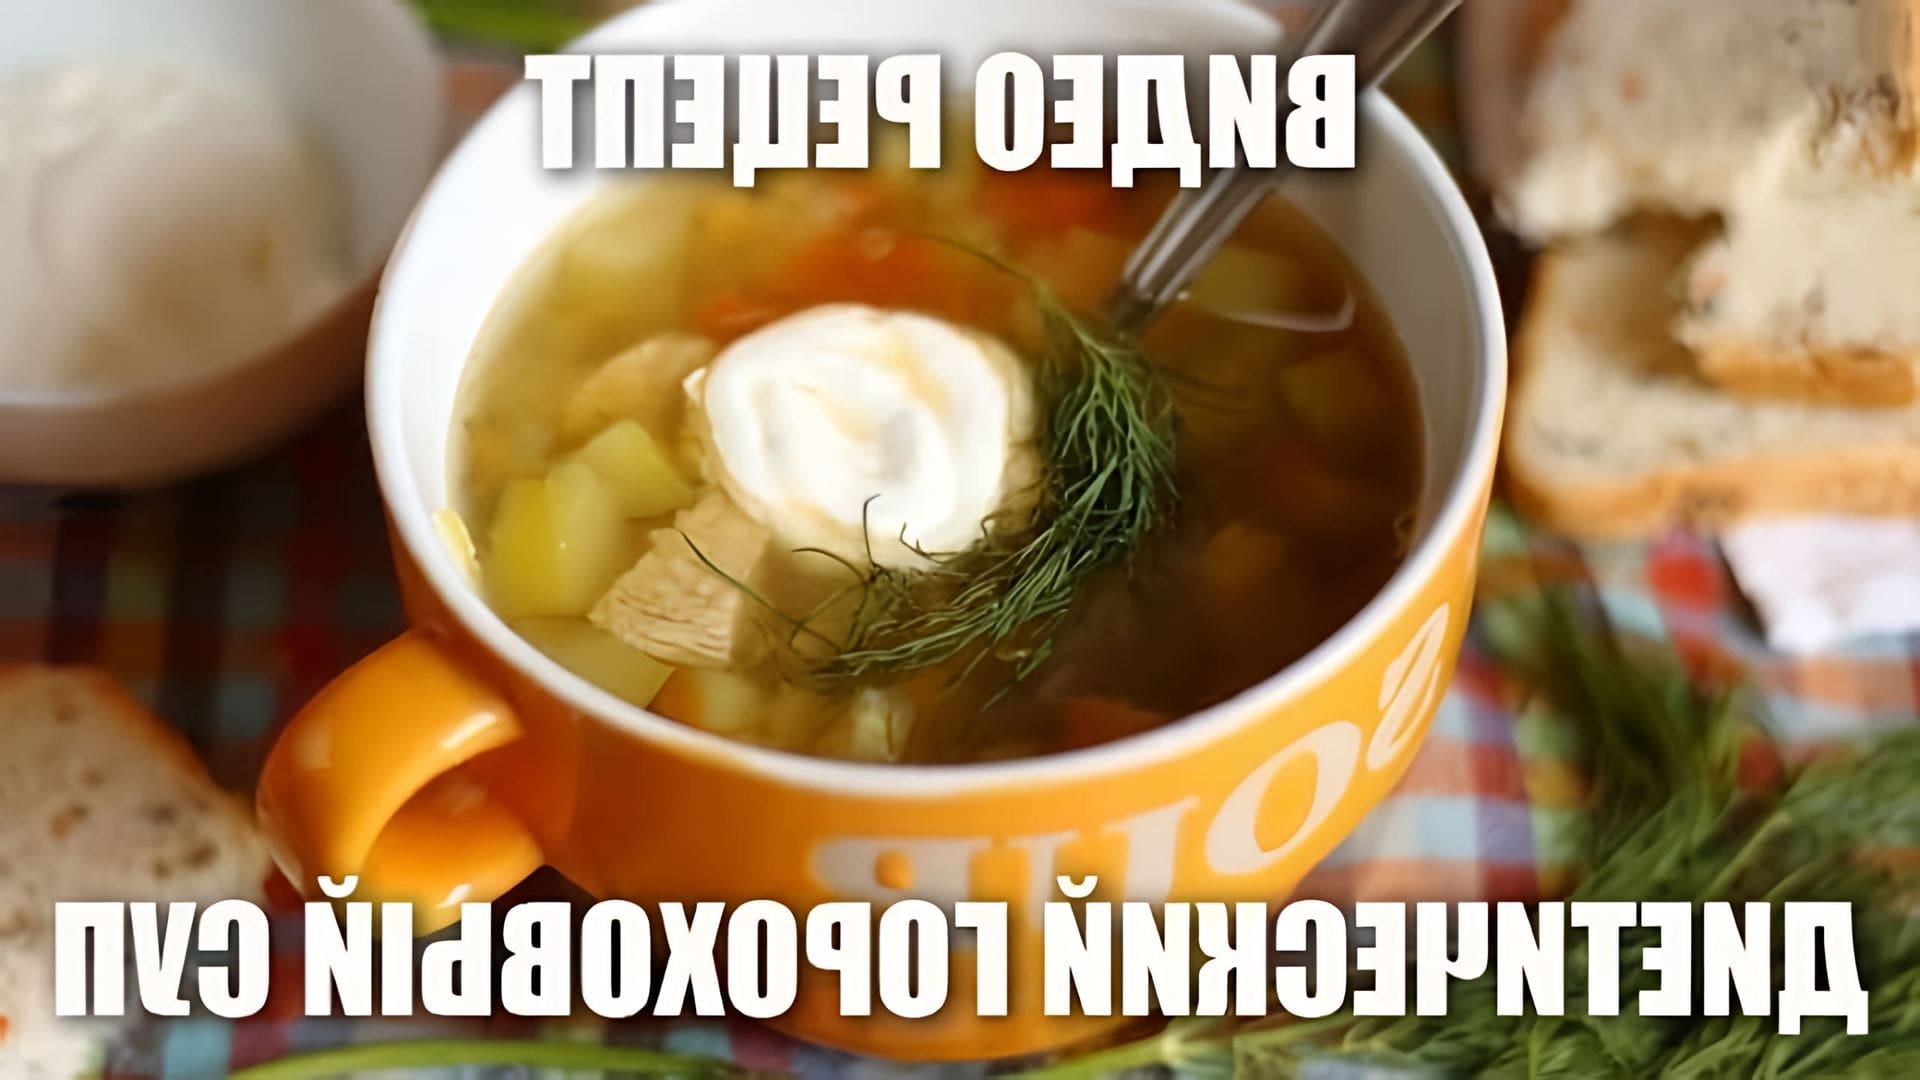 В данном видео демонстрируется рецепт приготовления диетического горохового супа